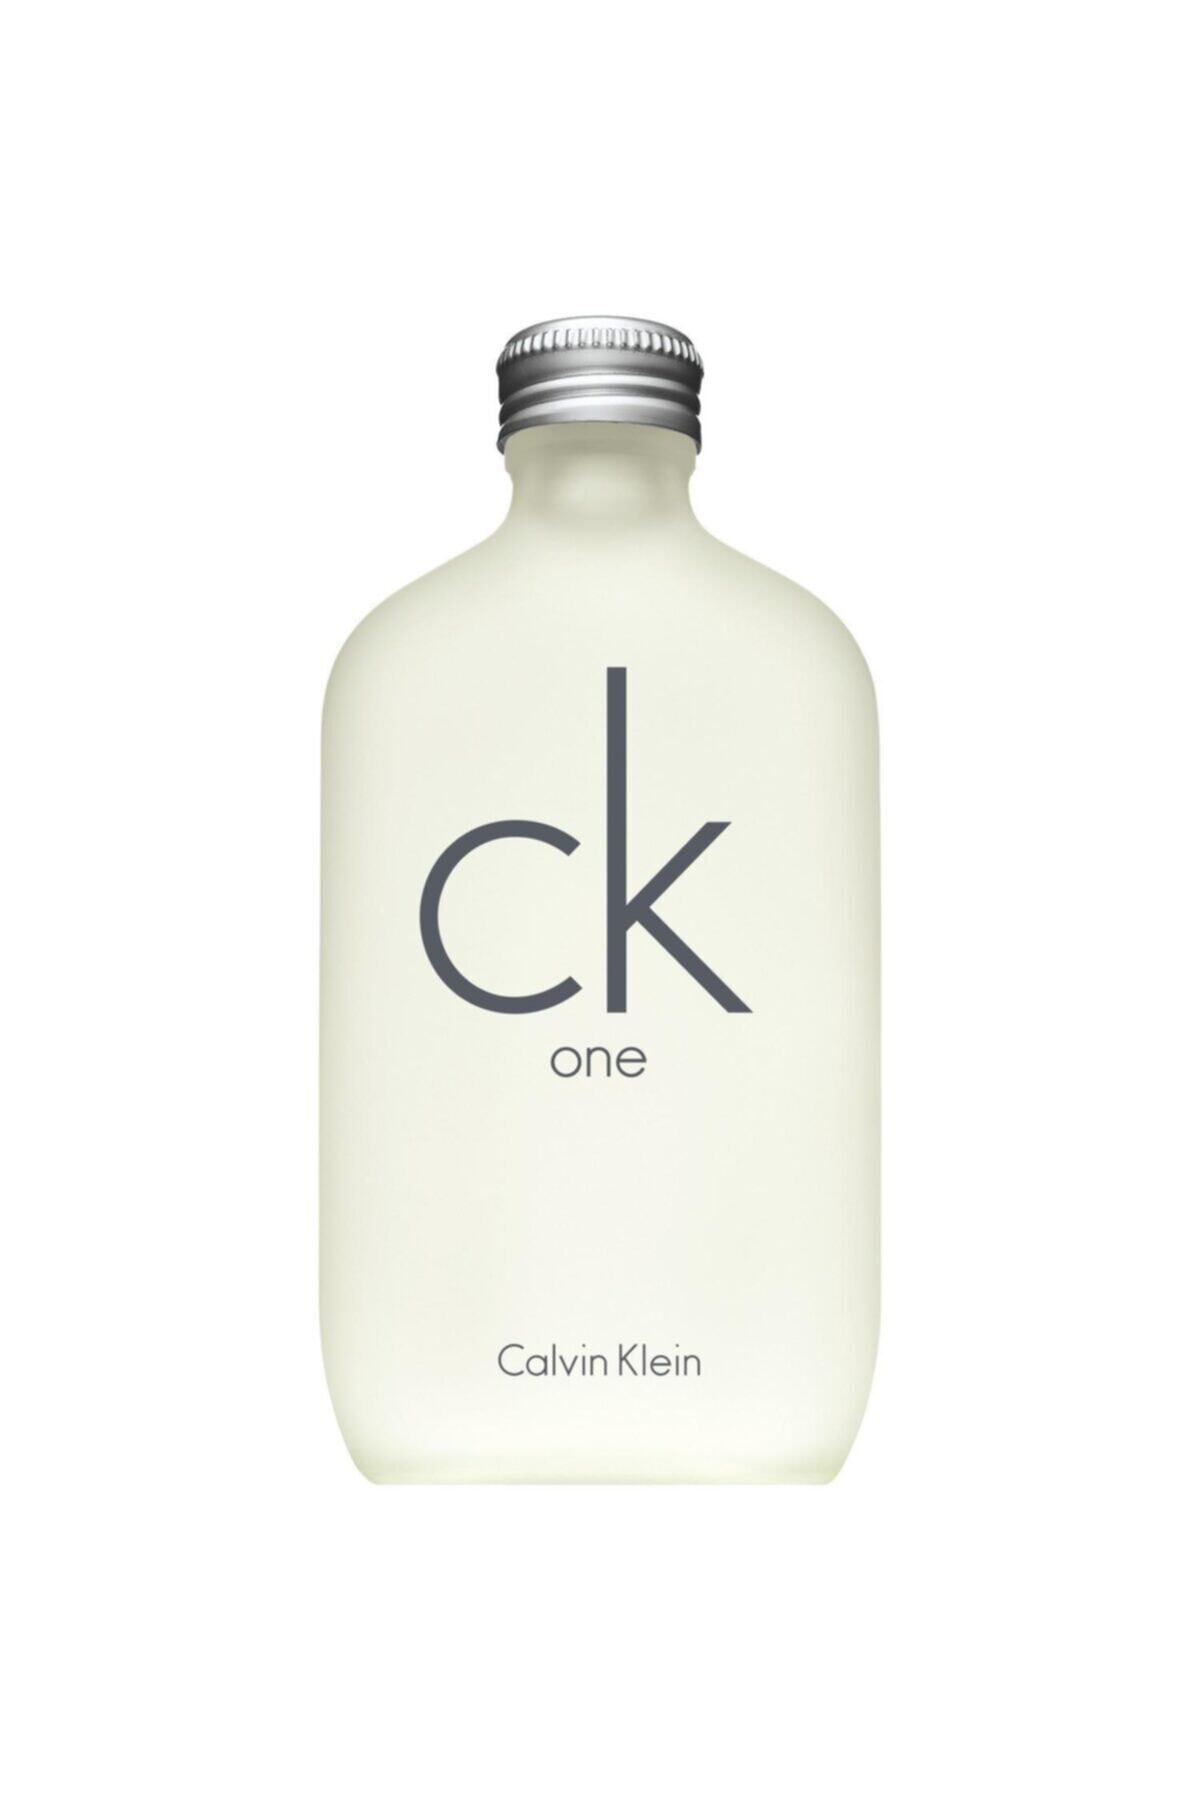 Calvin Klein One Edt 200ml